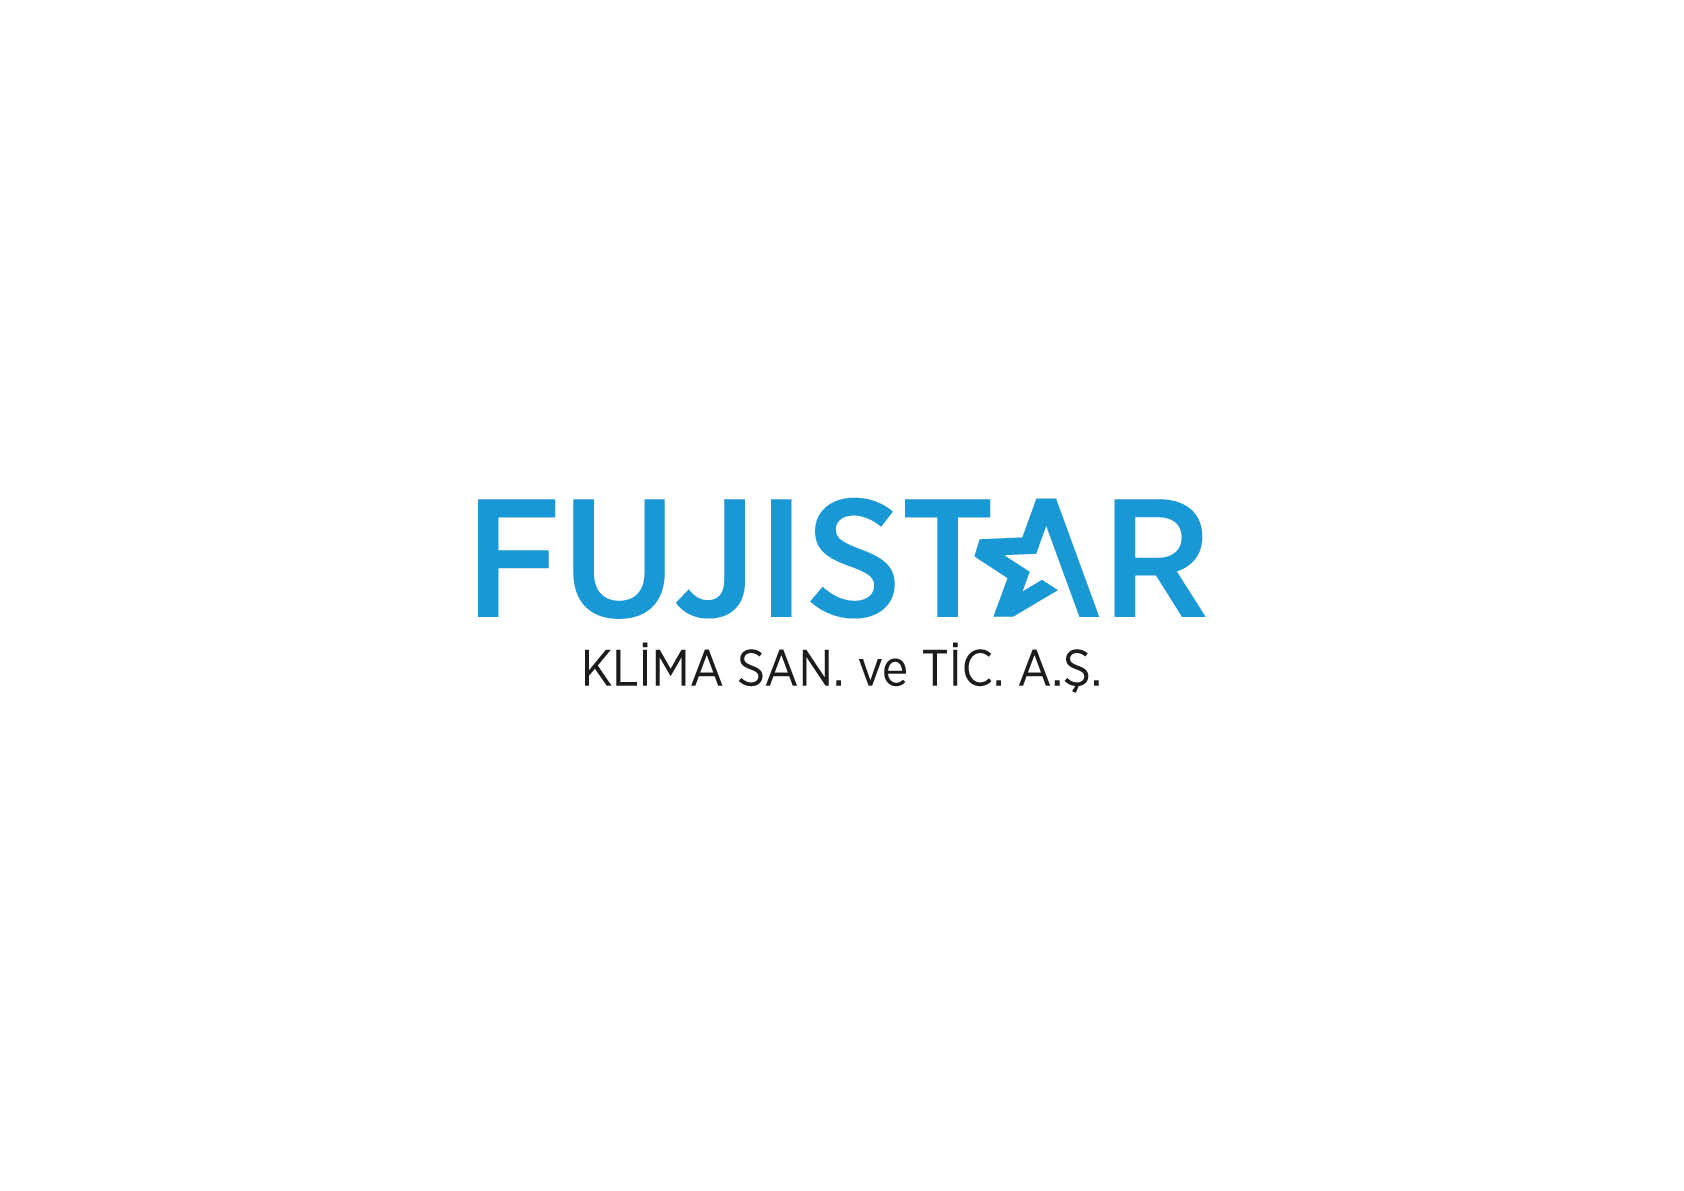 FujiStar_Kurumsal2